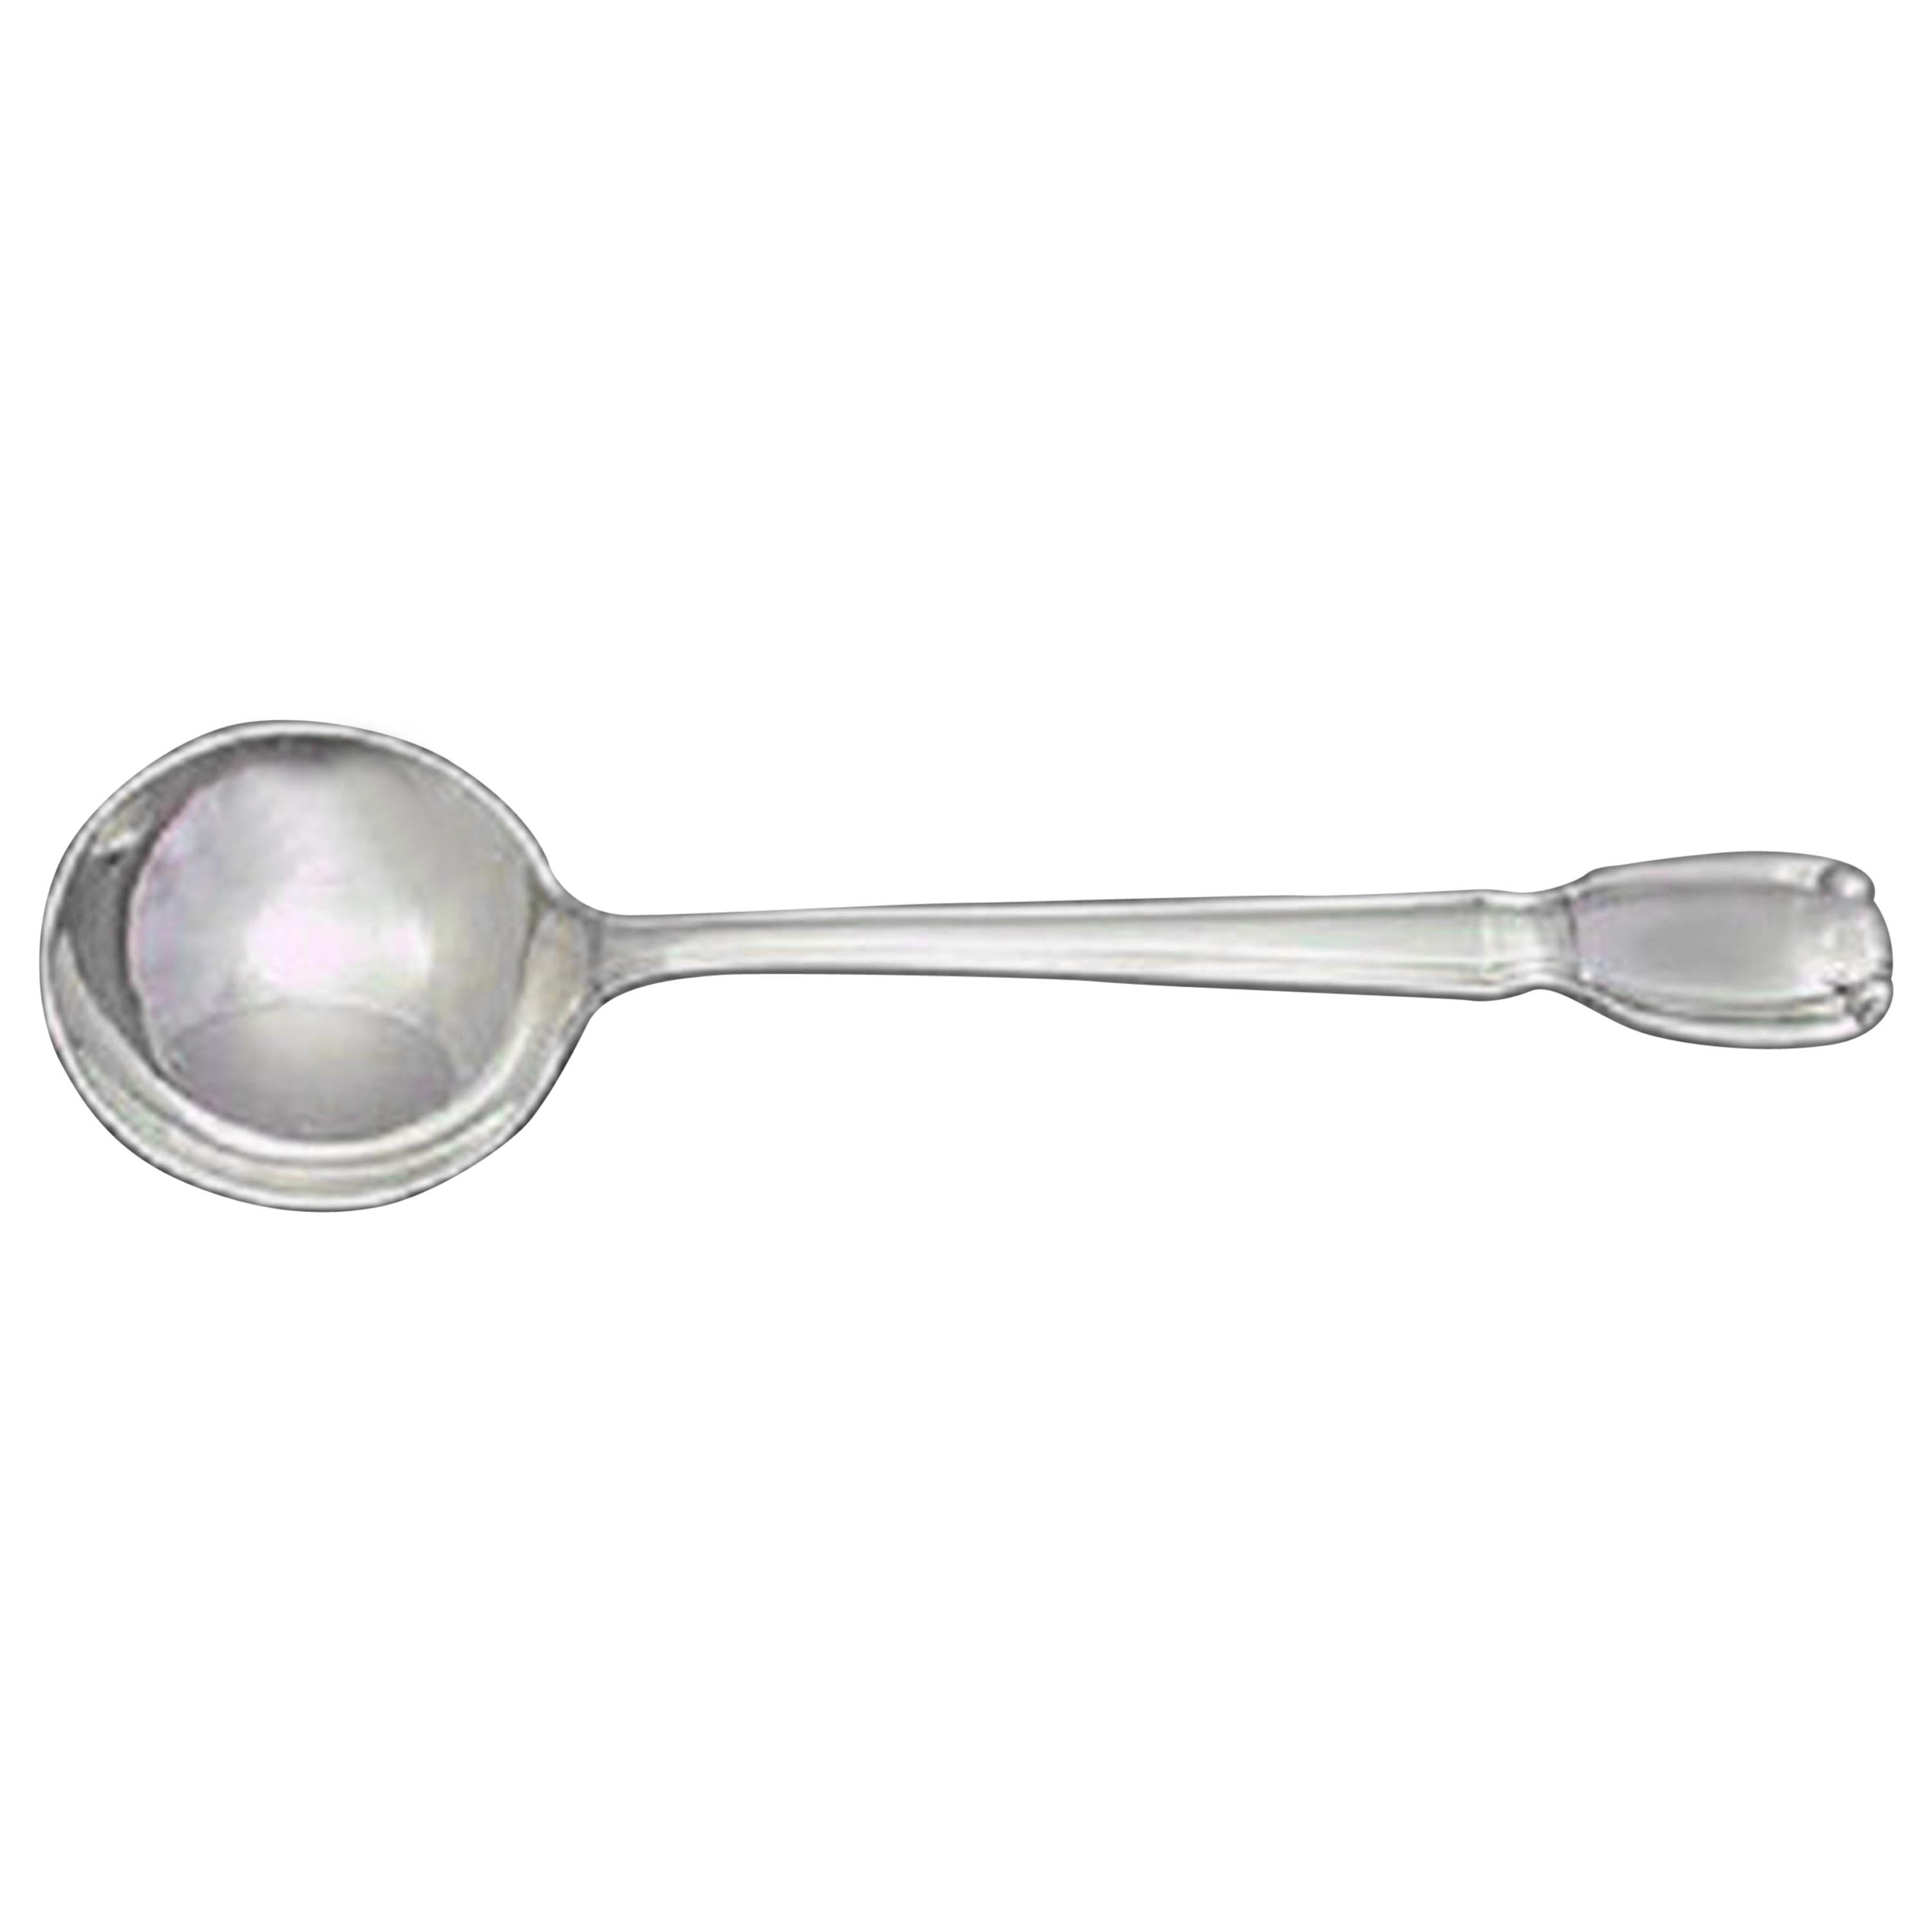 Castilian by Tiffany & Co. Sterling Silver Bouillon Soup Spoon